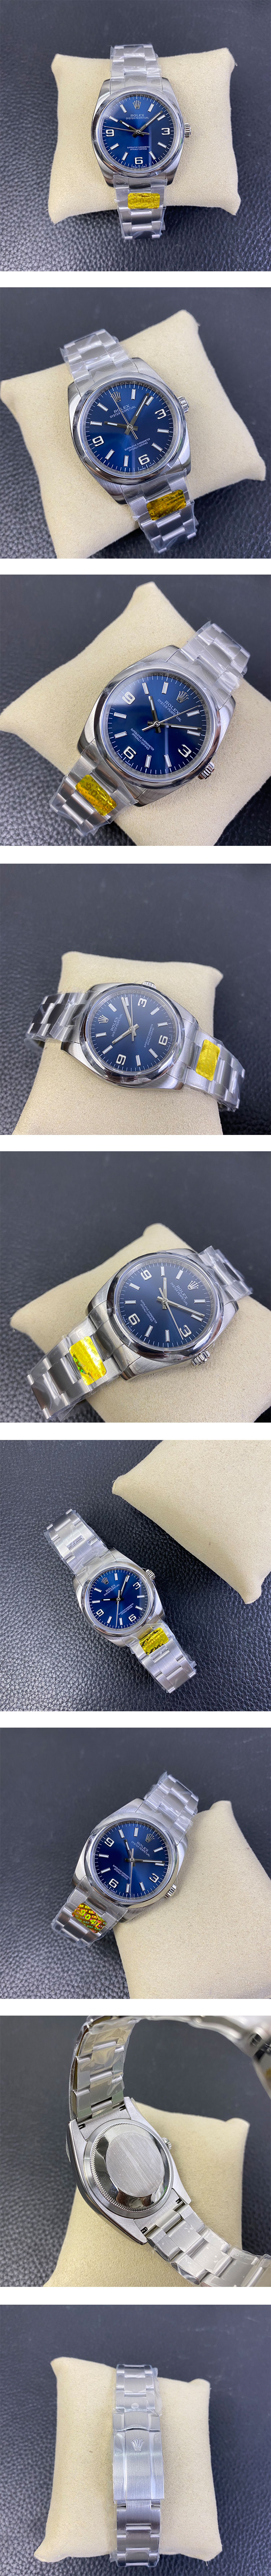 ロレックススーパーコピー腕時計 オイスターパーペチュアル 116000 ブルー 369